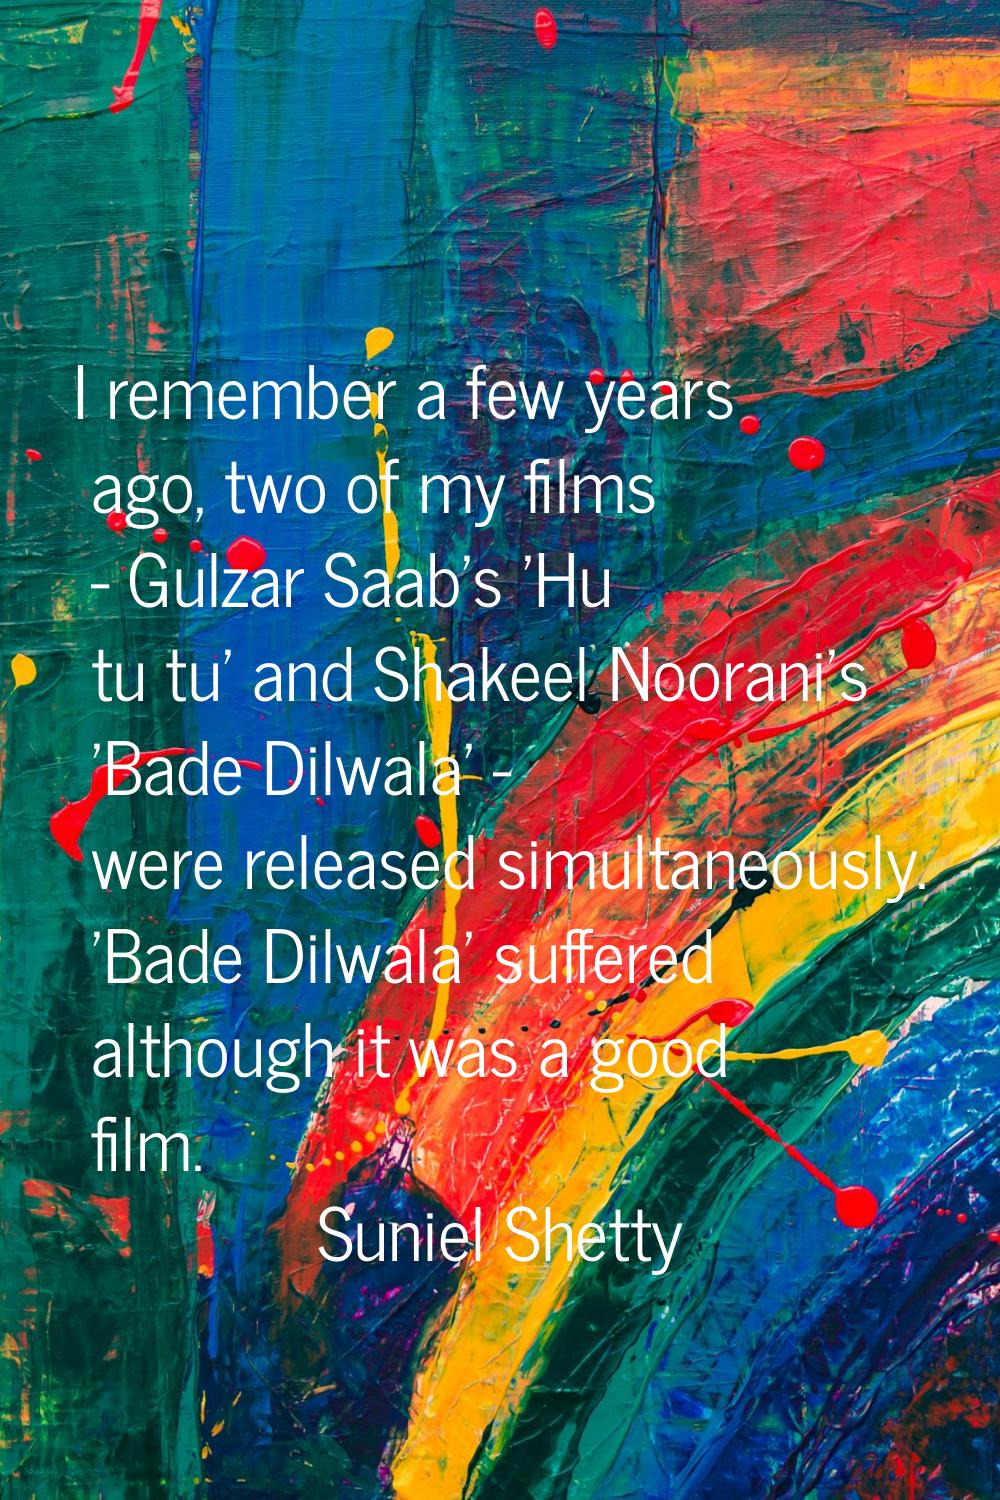 I remember a few years ago, two of my films - Gulzar Saab's 'Hu tu tu' and Shakeel Noorani's 'Bade 